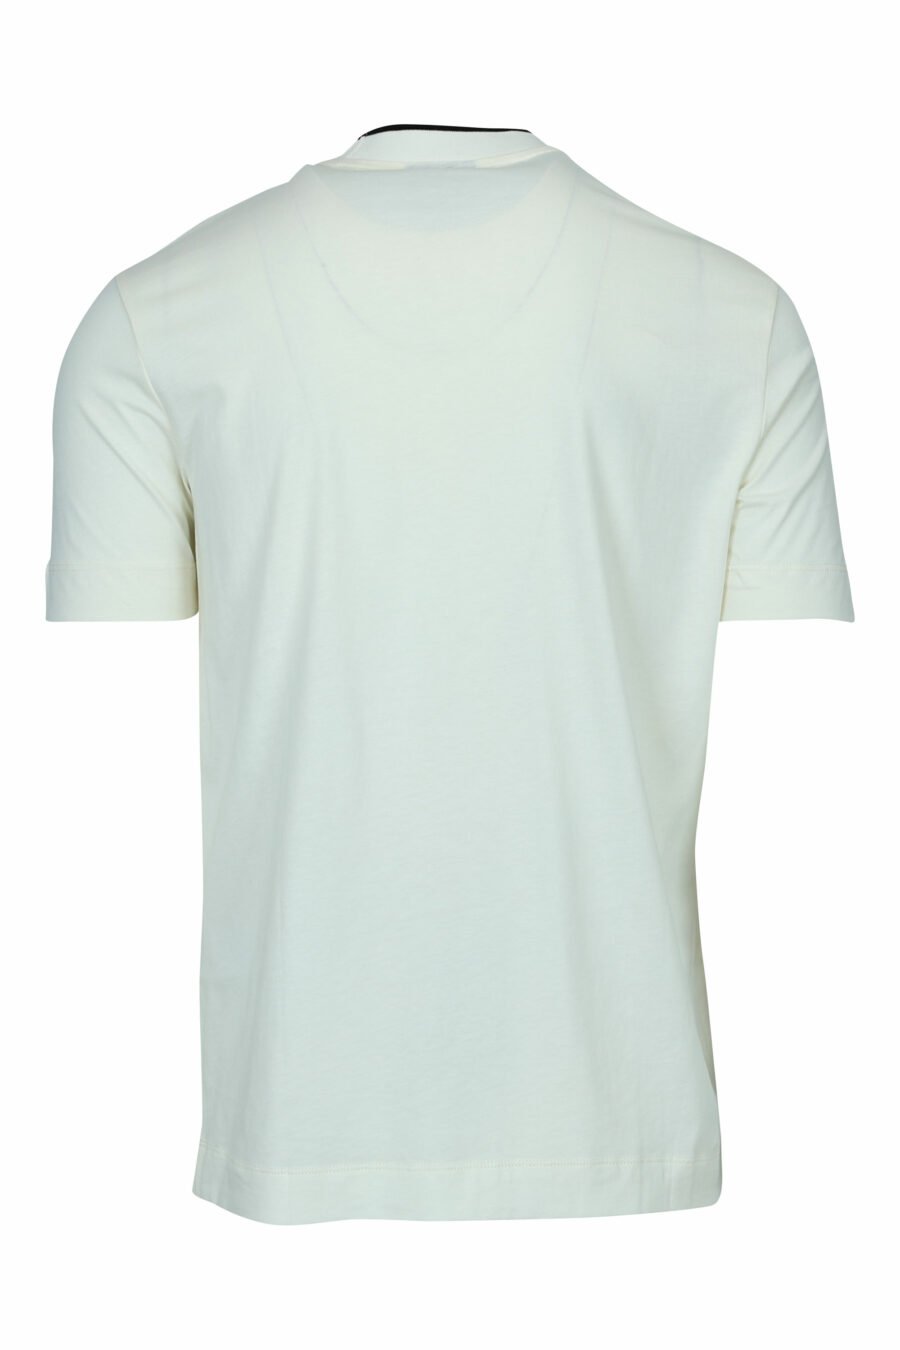 T-shirt crème avec minilogo "emporio" centré - 8057970991724 1